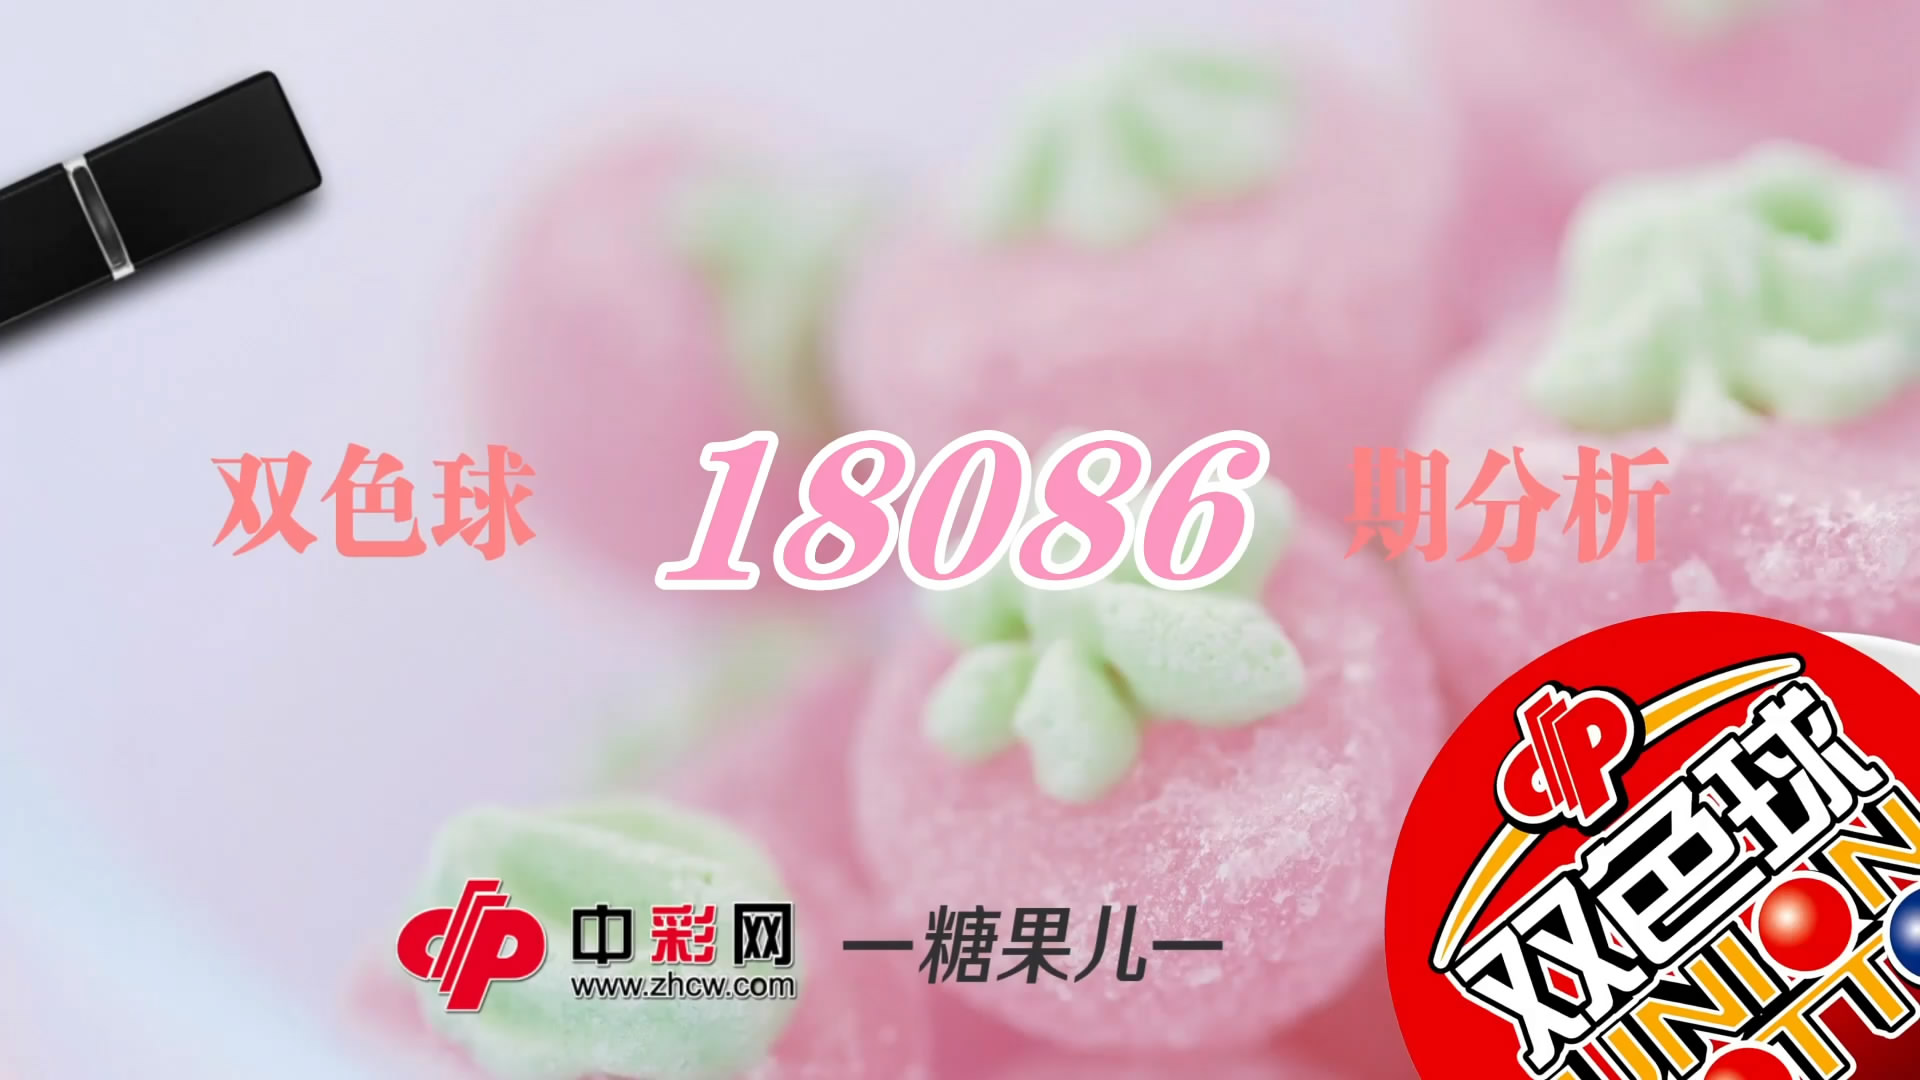 【中彩视频】糖果儿双色球第18086期